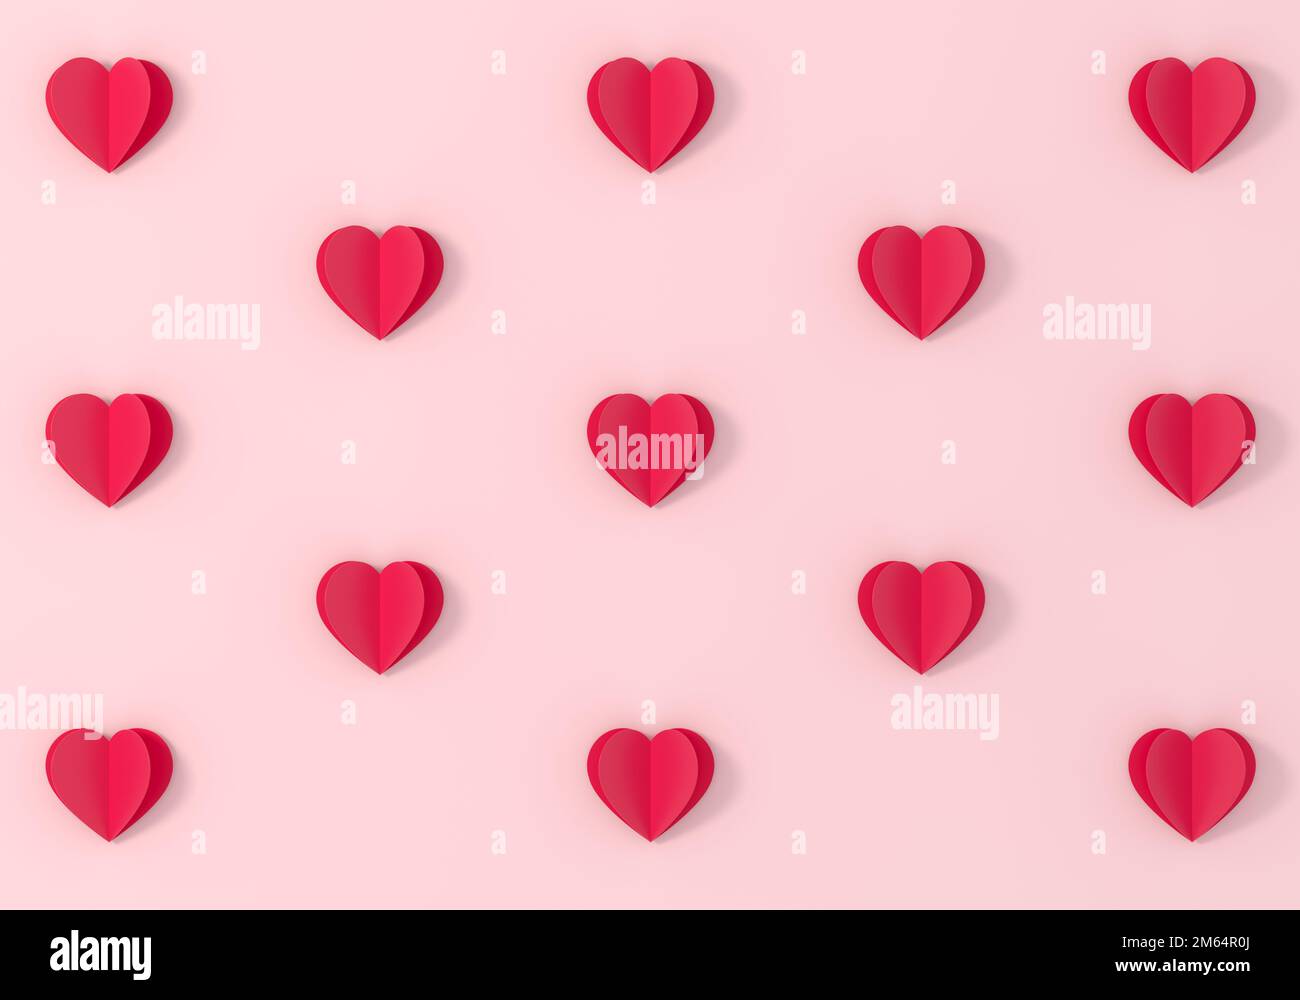 Heart Paper Cut Pattern: Sự tinh tế và tỉ mỉ của những mẫu giấy cắt hình trái tim sẽ khiến bạn say mê ngay từ cái nhìn đầu tiên. Hãy xem ngay để khám phá những hoạt hình đẹp mắt cùng các mẫu giấy cắt trái tim độc đáo.